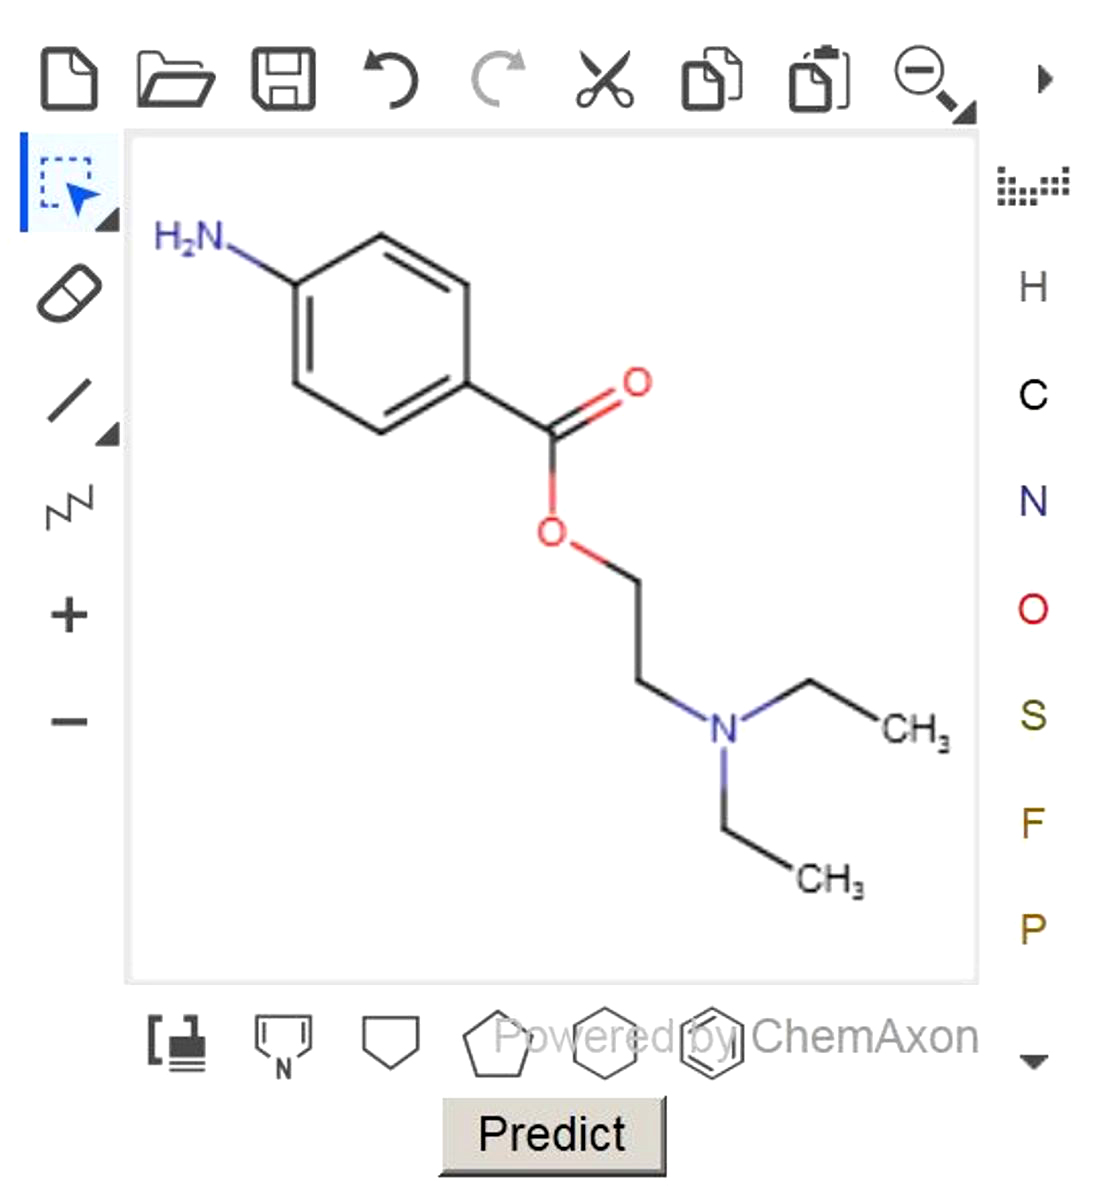  <strong>Рис. 1. </strong>Ввод структурной формулы препарата «Прокаин» в веб-сервисе для прогнозирования острой токсичности (15)